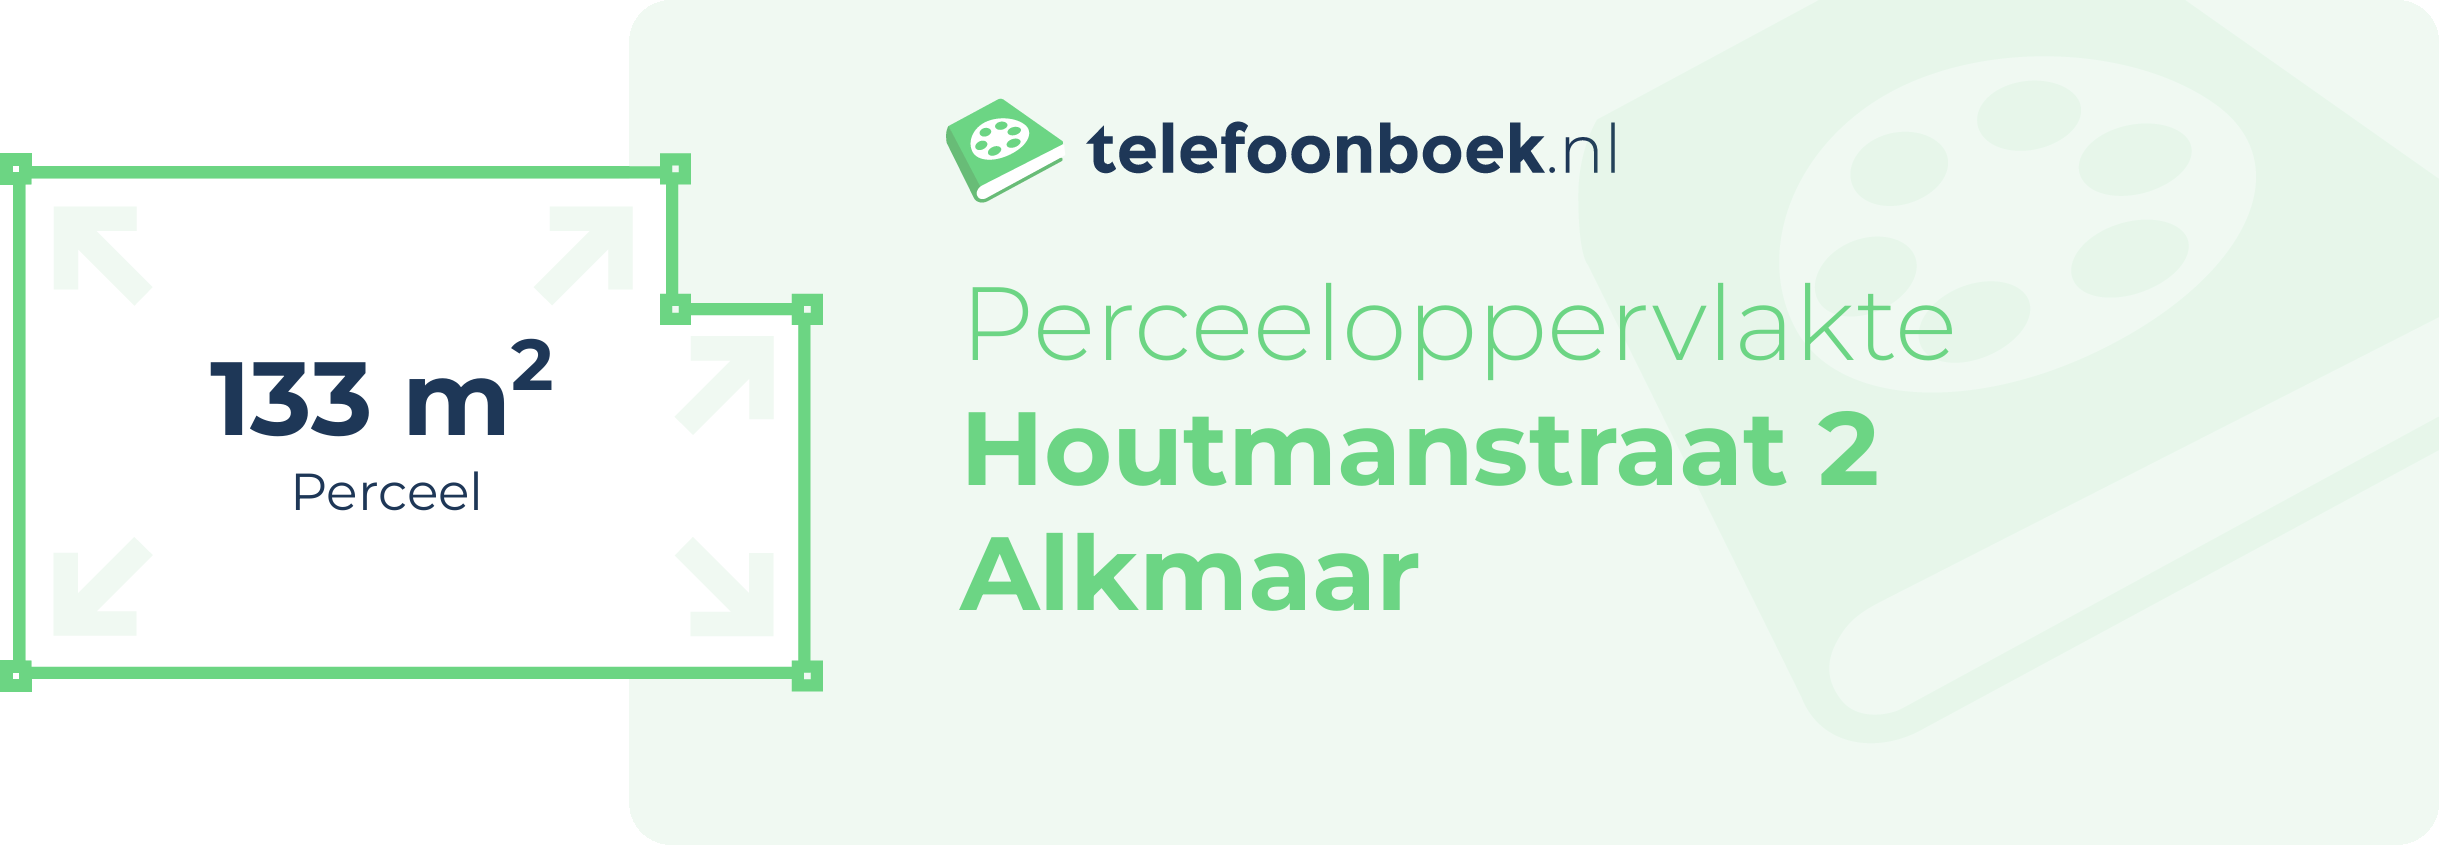 Perceeloppervlakte Houtmanstraat 2 Alkmaar